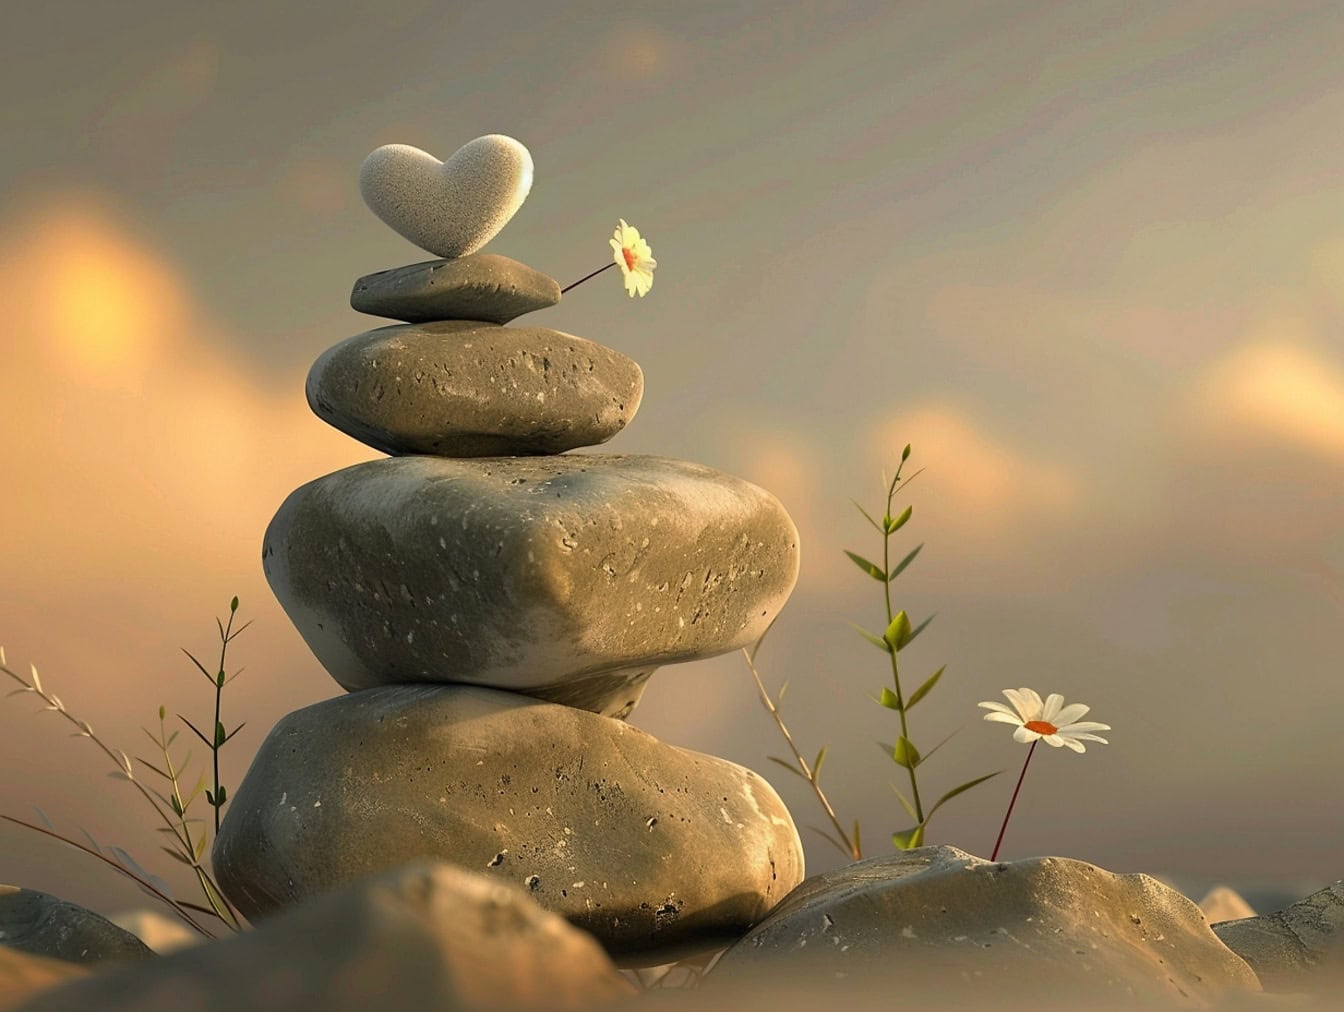 Στοίβα από πέτρες με μια καρδιά στην κορυφή, μια απεικόνιση της ισορροπίας και της αρμονίας στην αγάπη